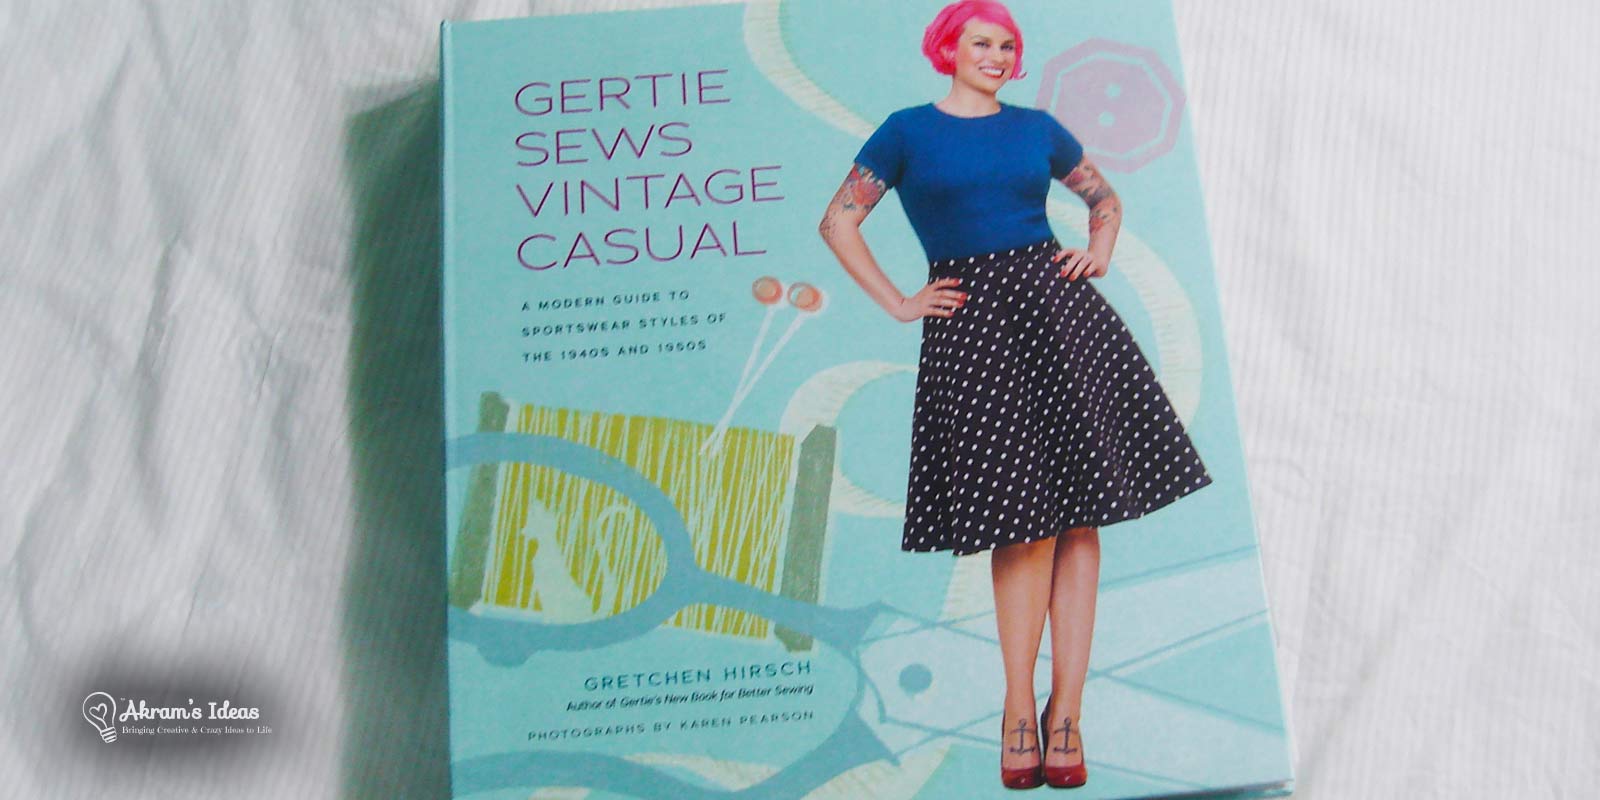 Gertie-sews-vintage-casual